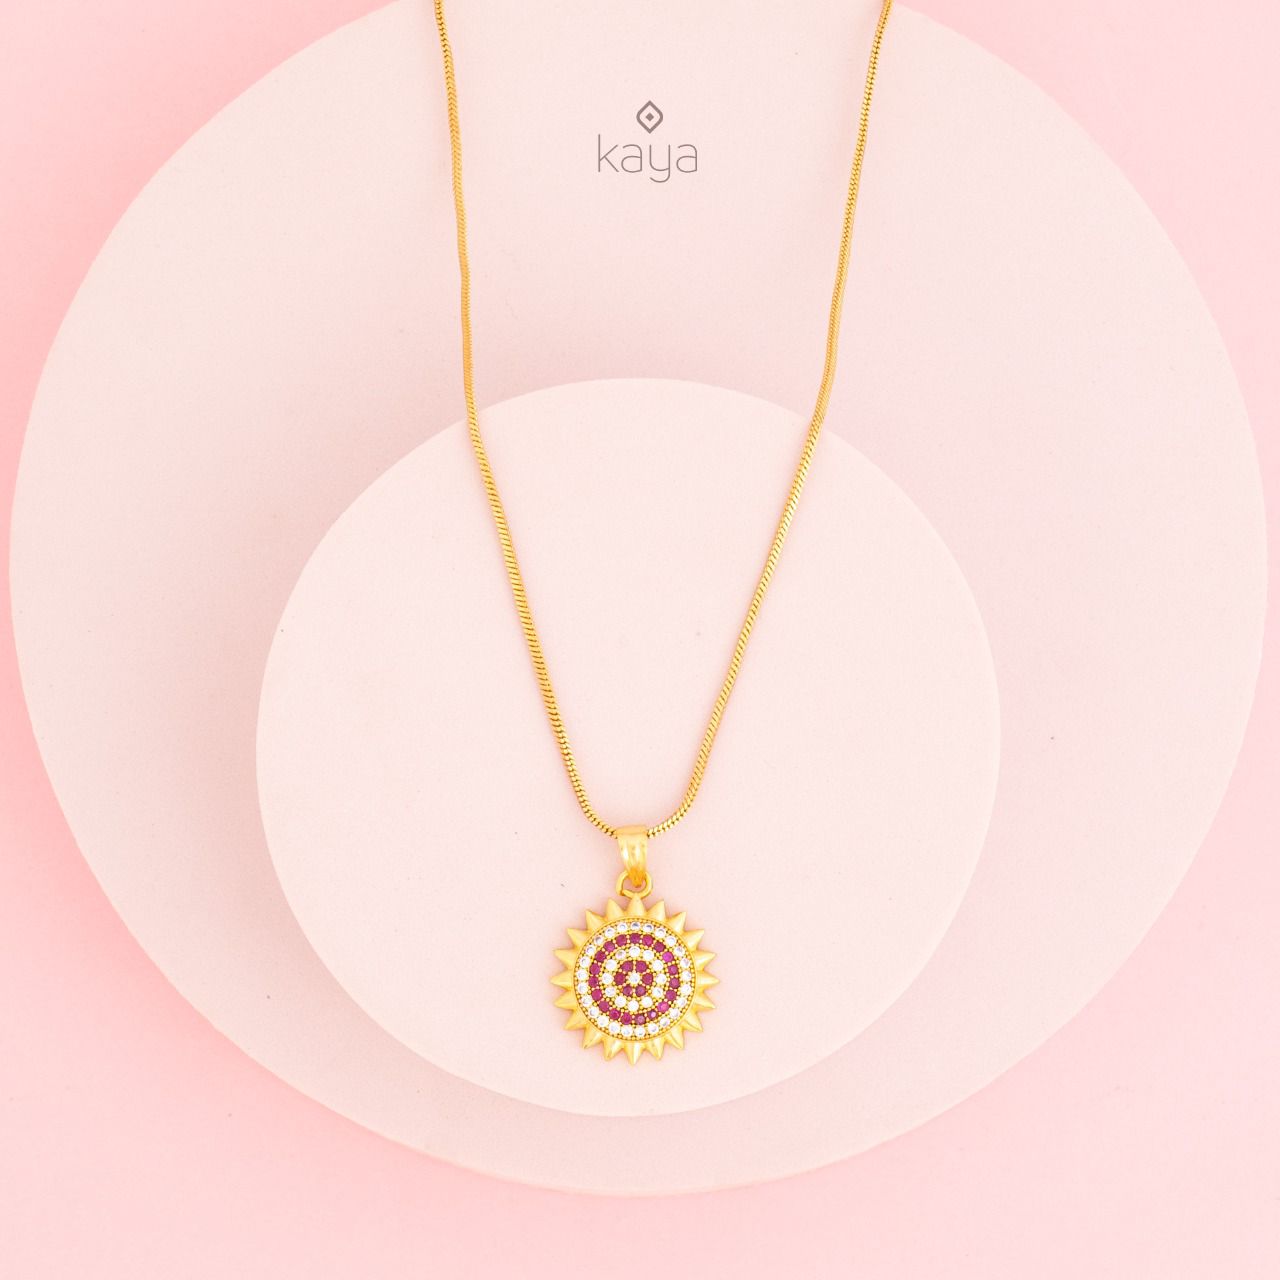 Simple pendant Necklace - SG10067